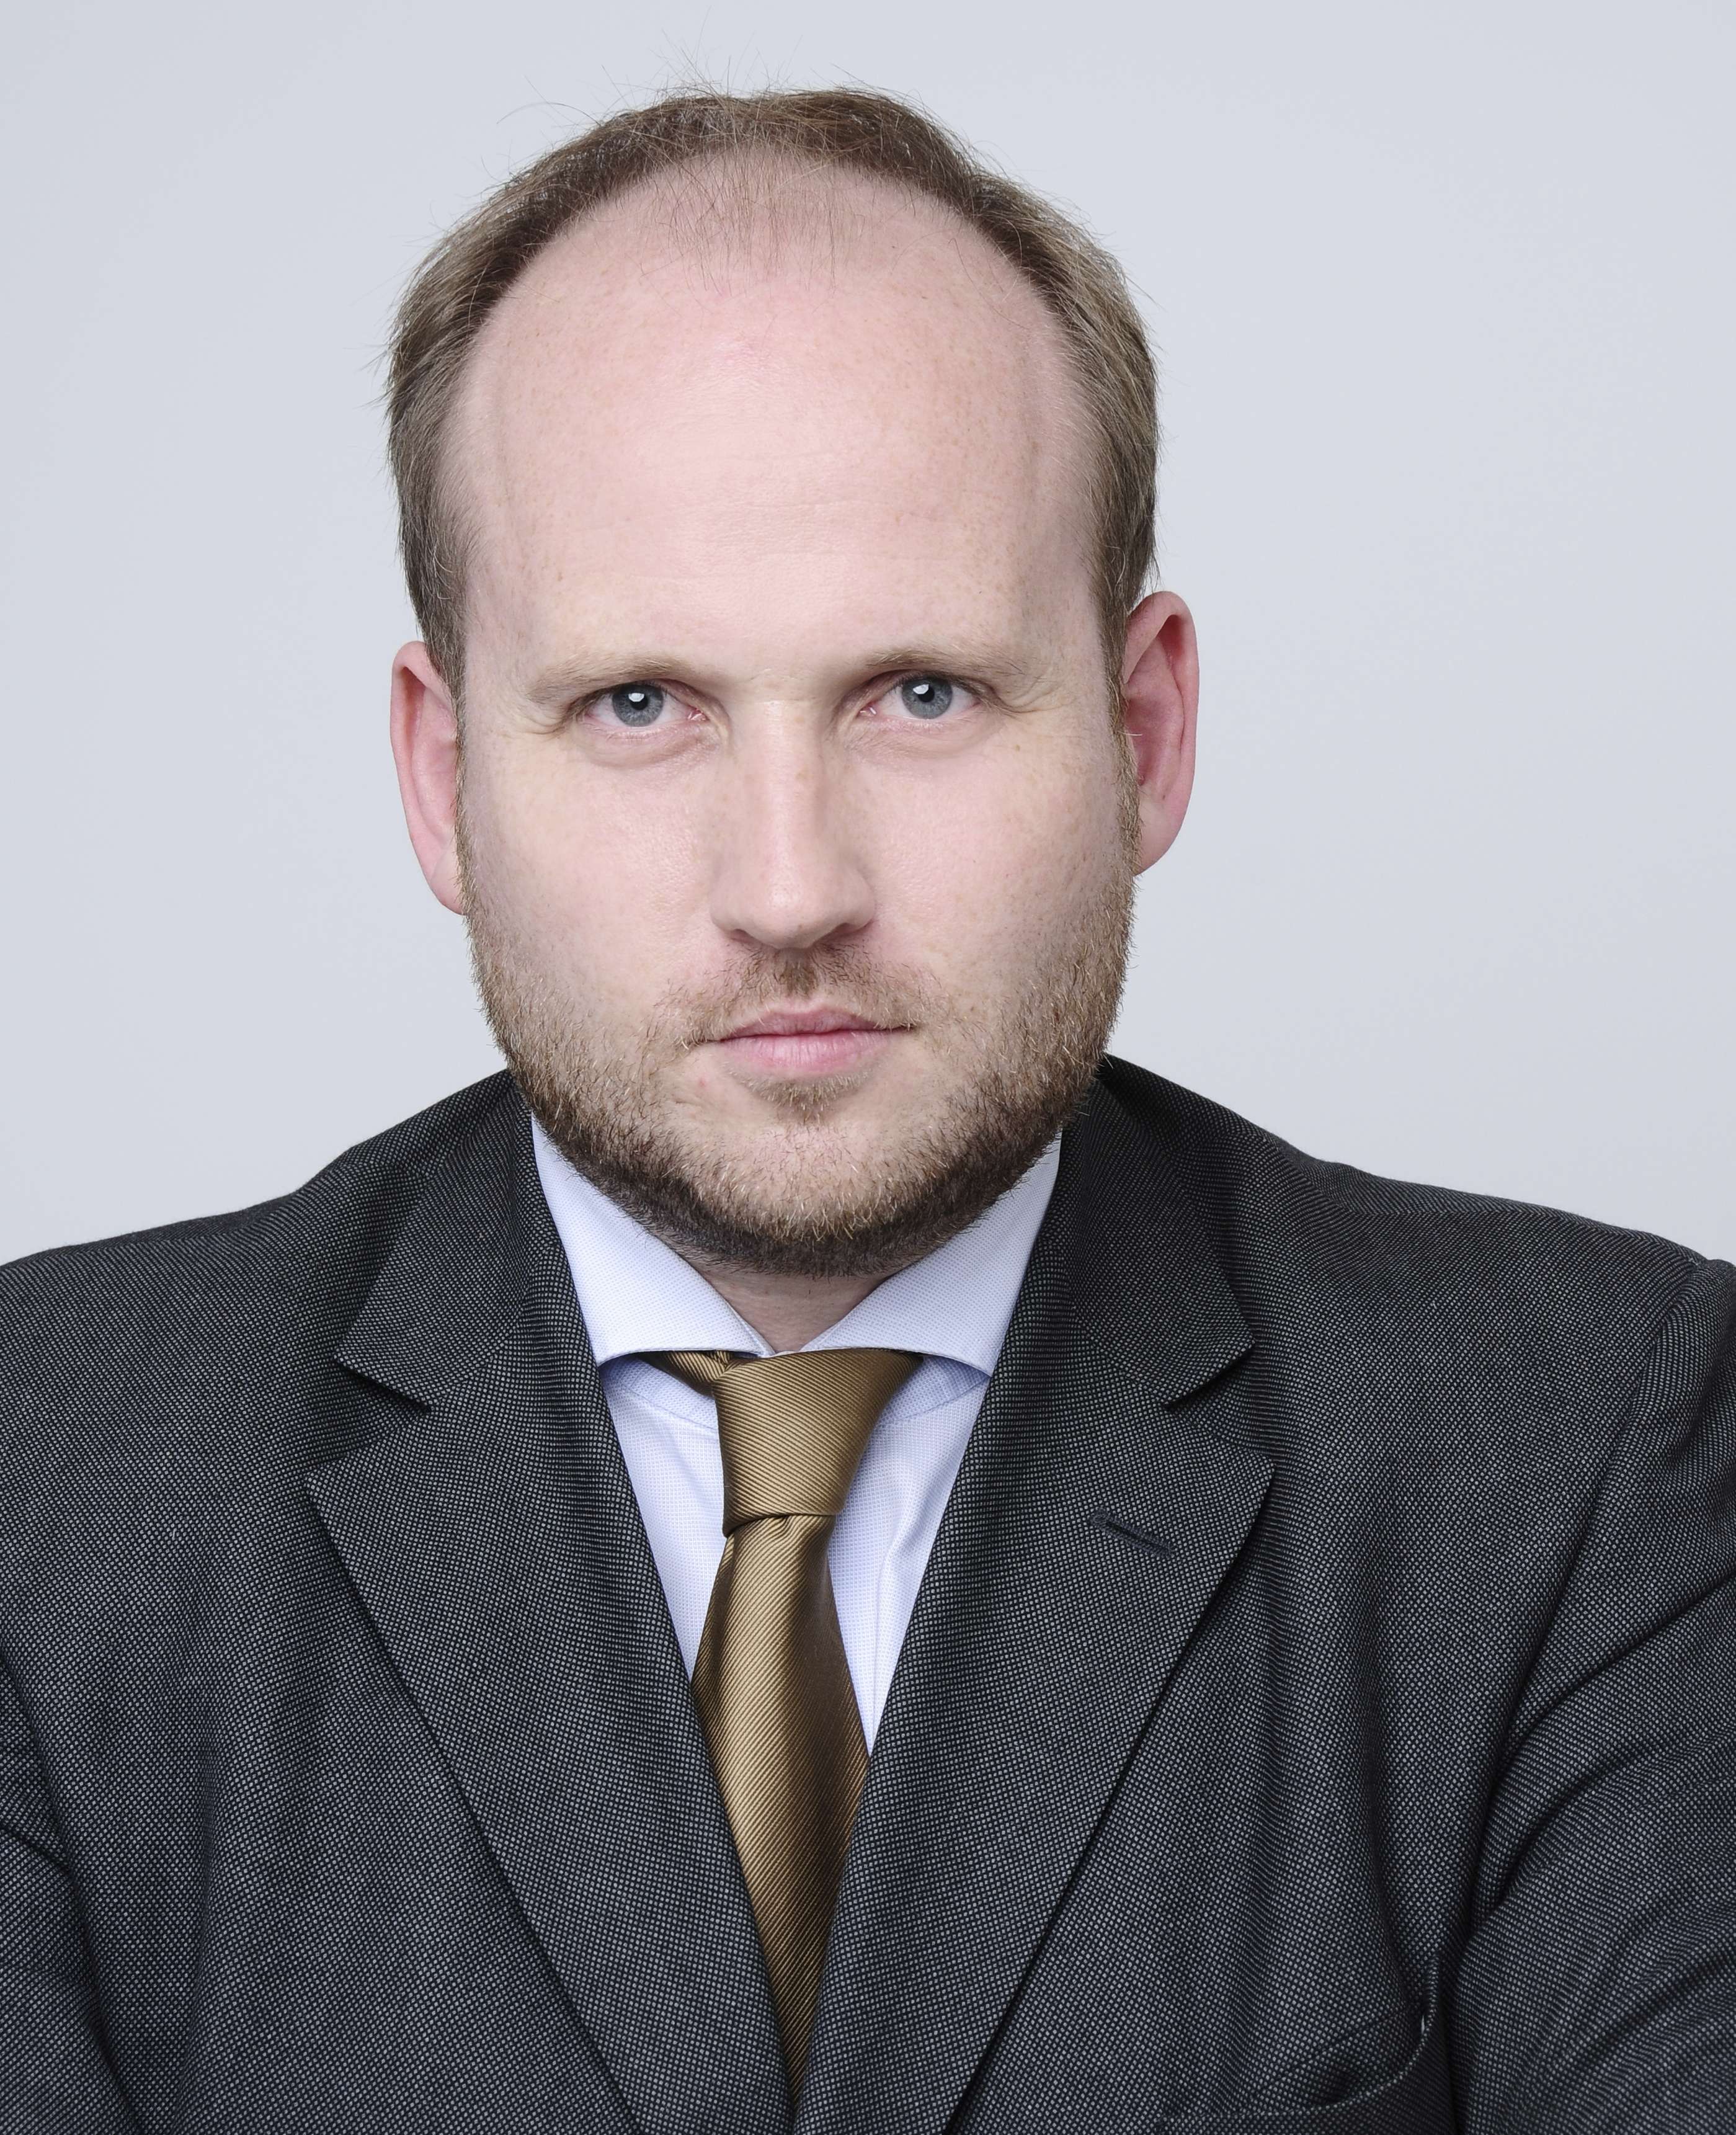 Tobias Bartz, member of the Rhenus management board and CEO of Air & Ocean